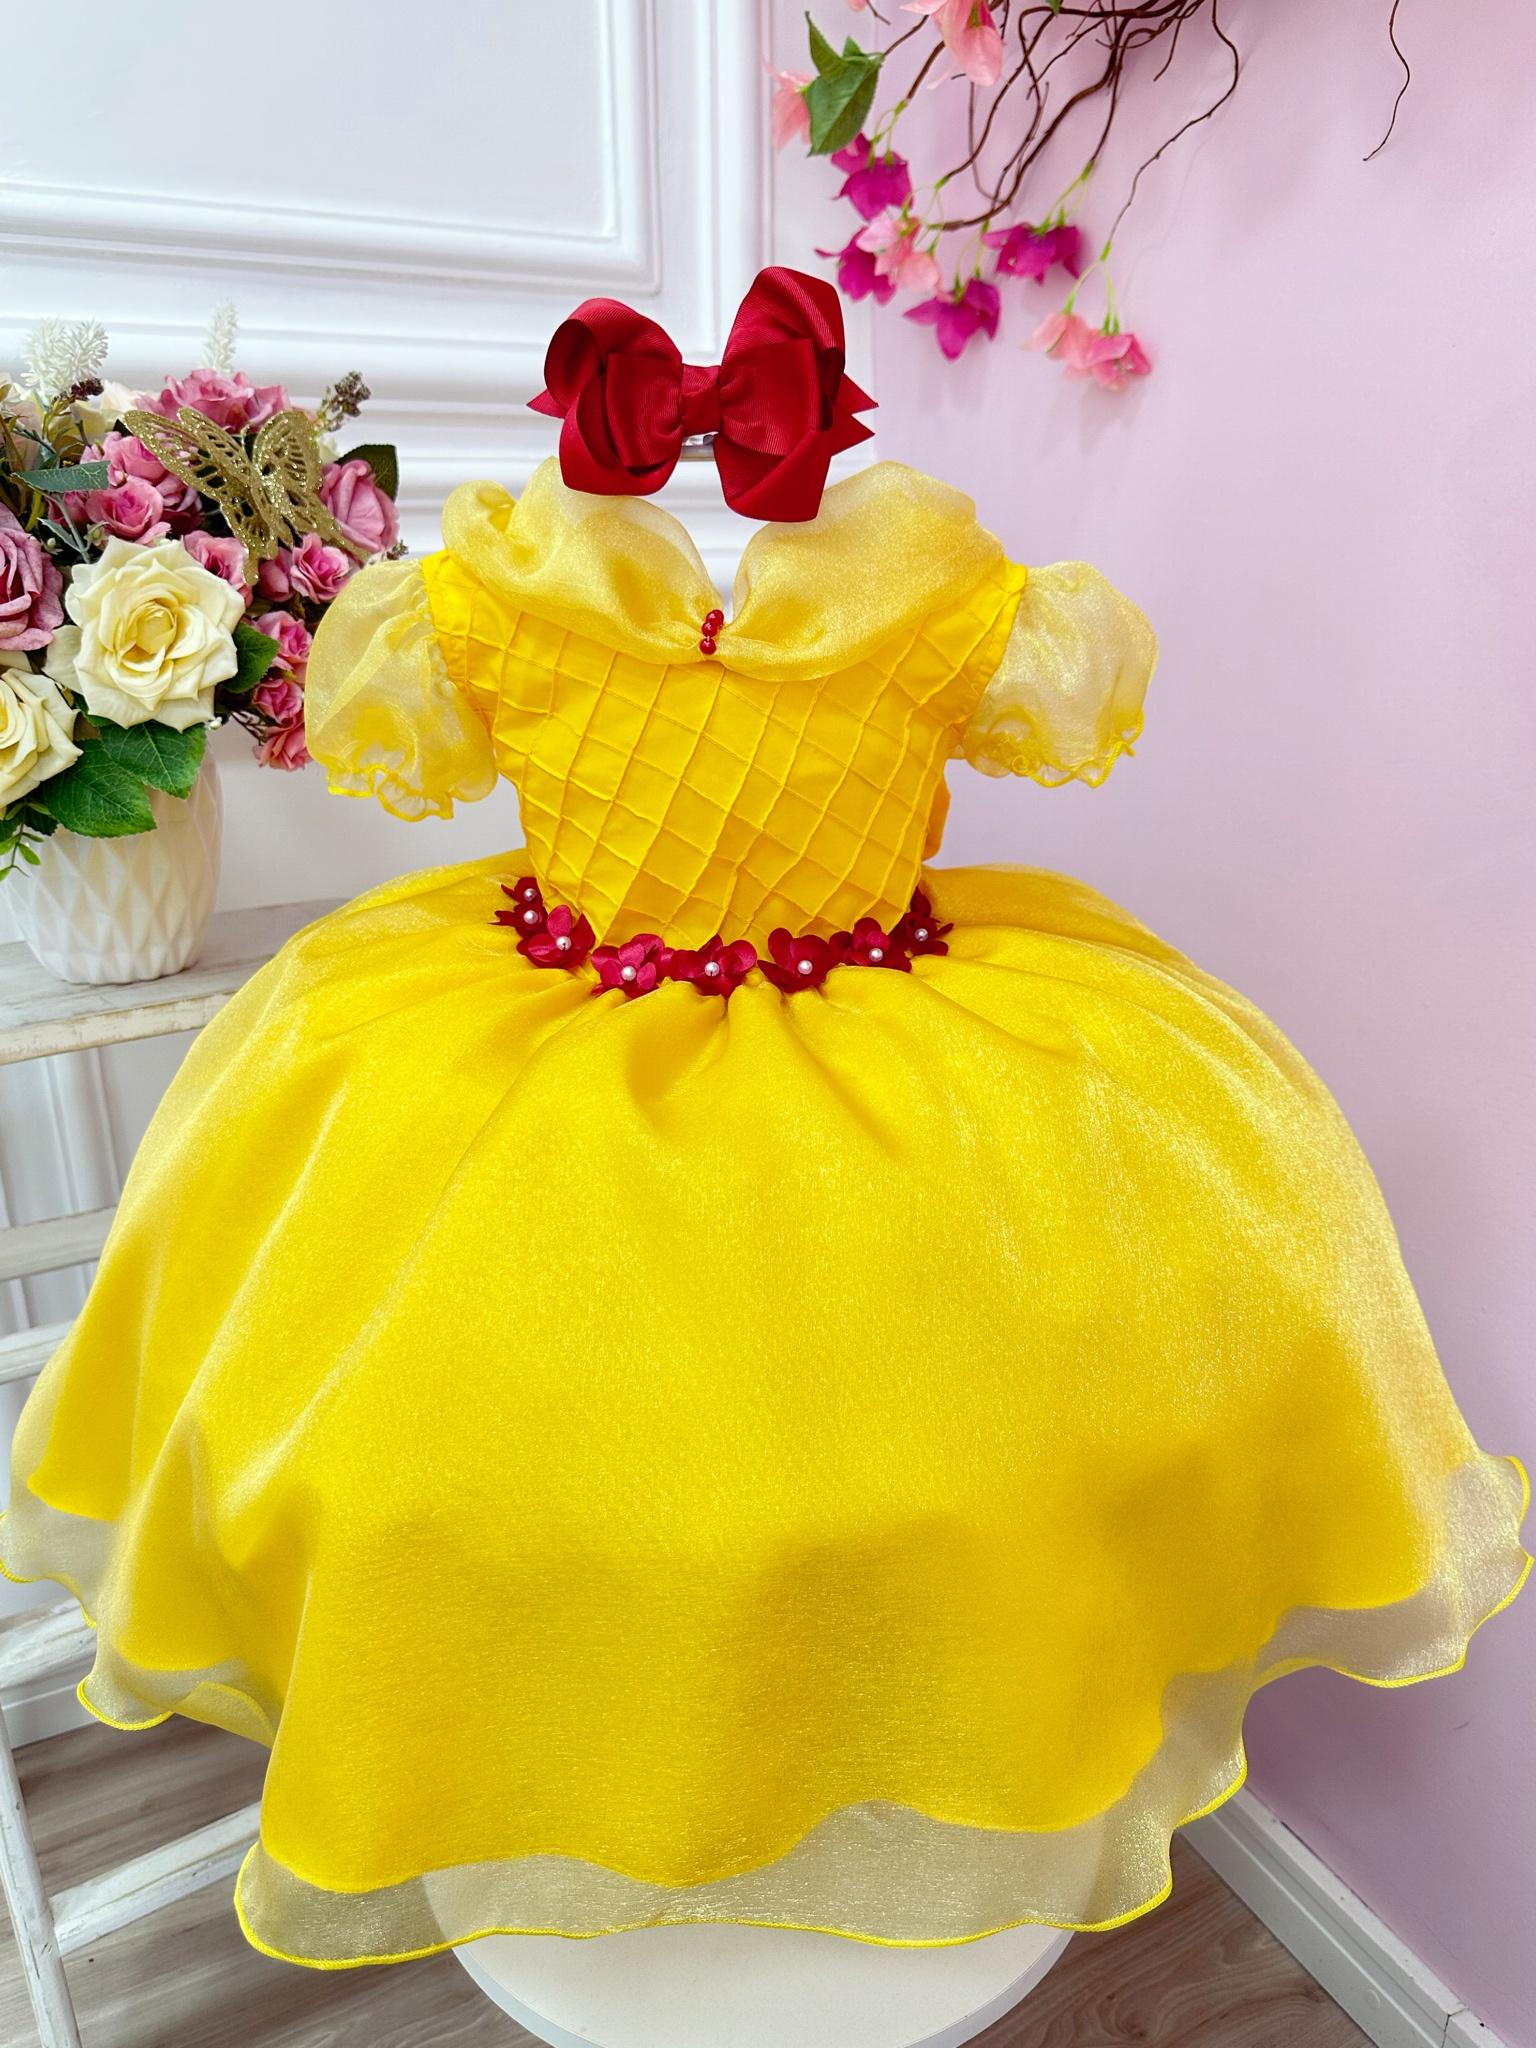 Vestido Infantil Amarelo Princesa Bela e a Fera C/ Flores